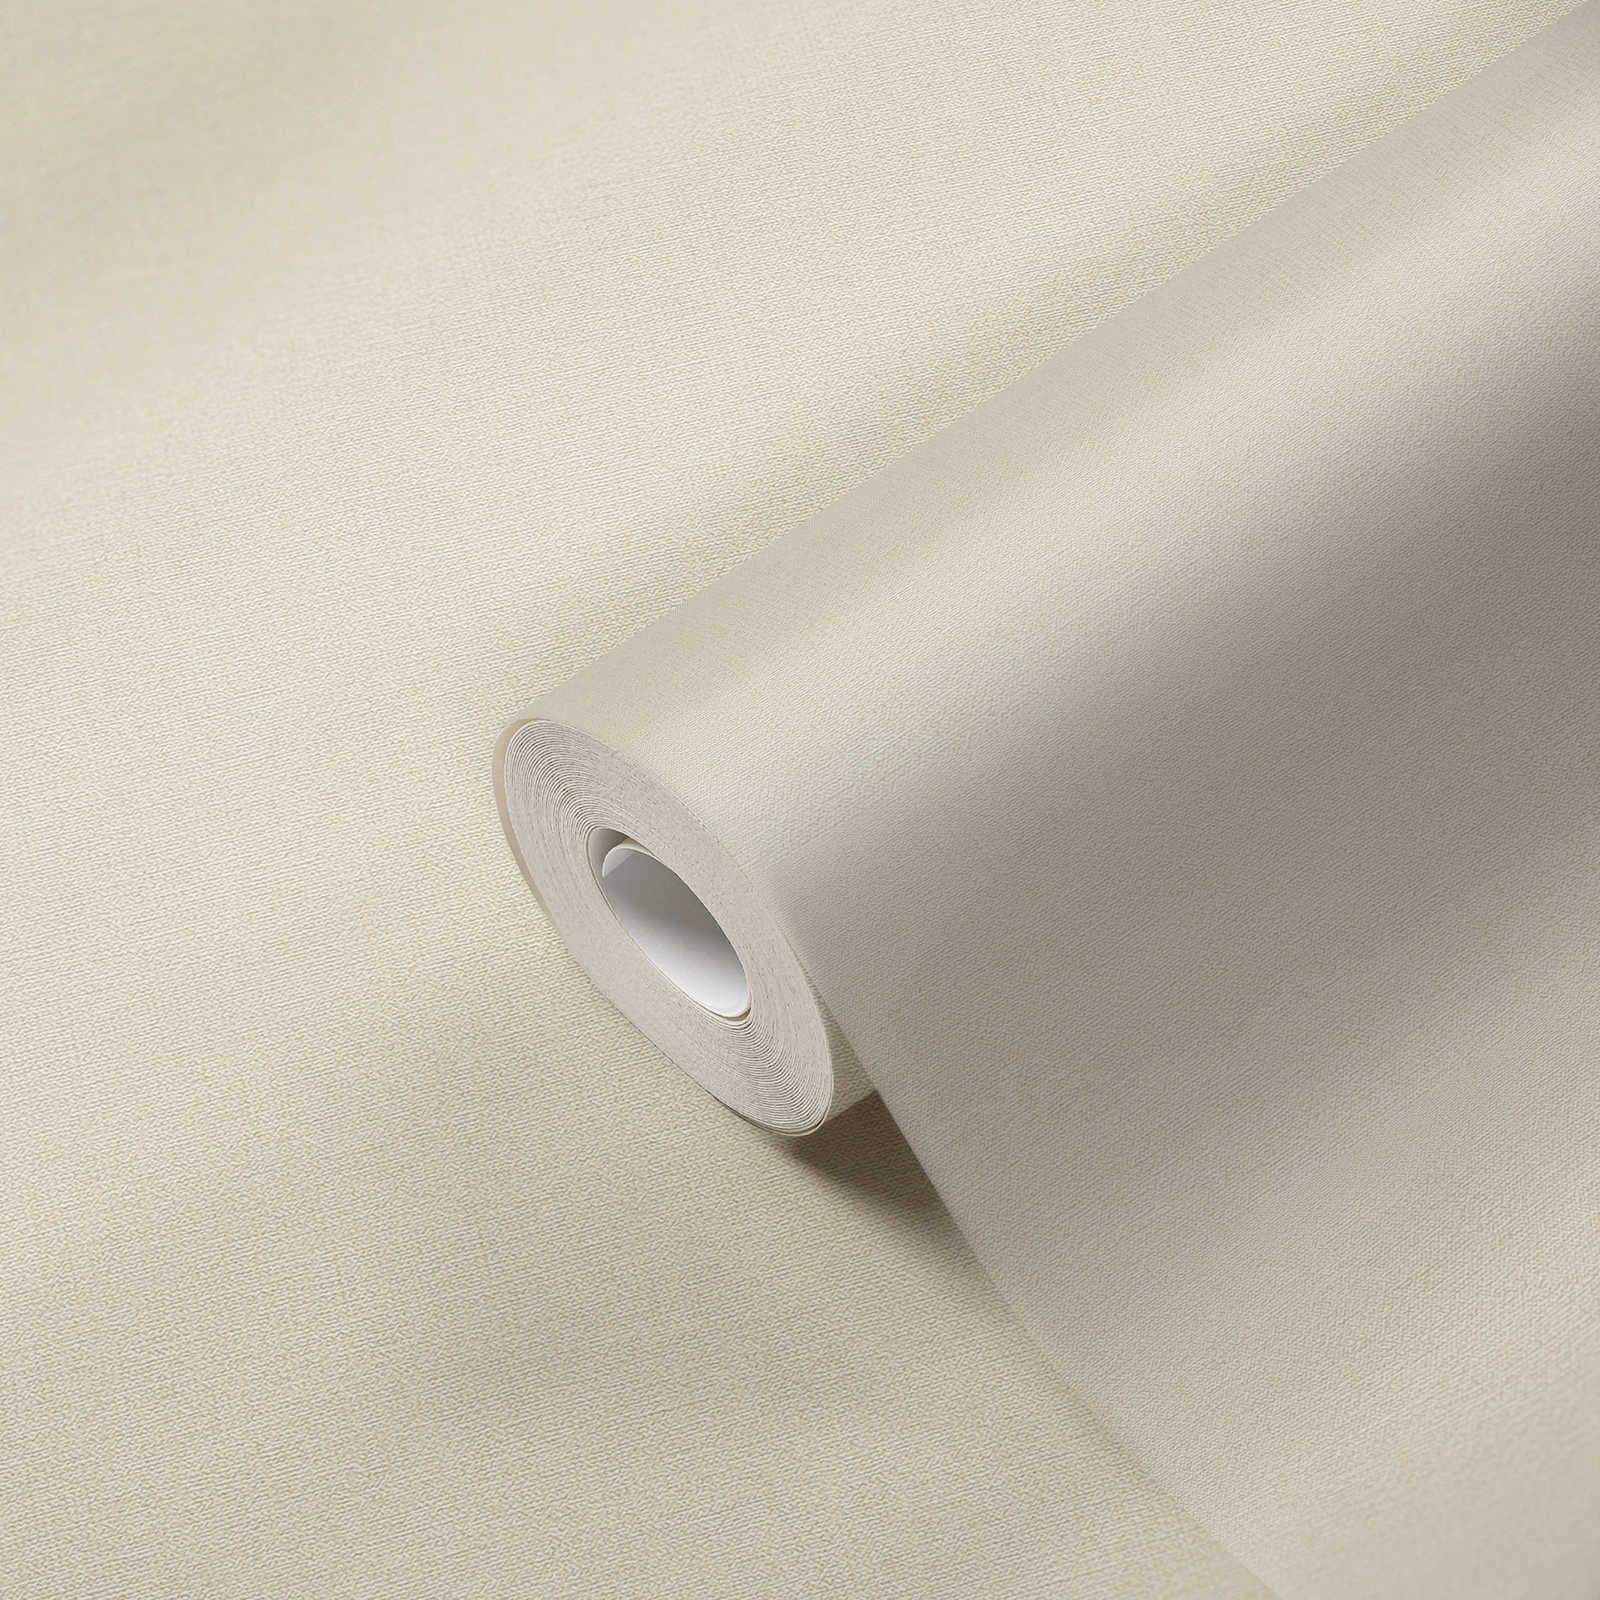             PVC-vrij vliesbehang met linnenlook - beige, wit
        